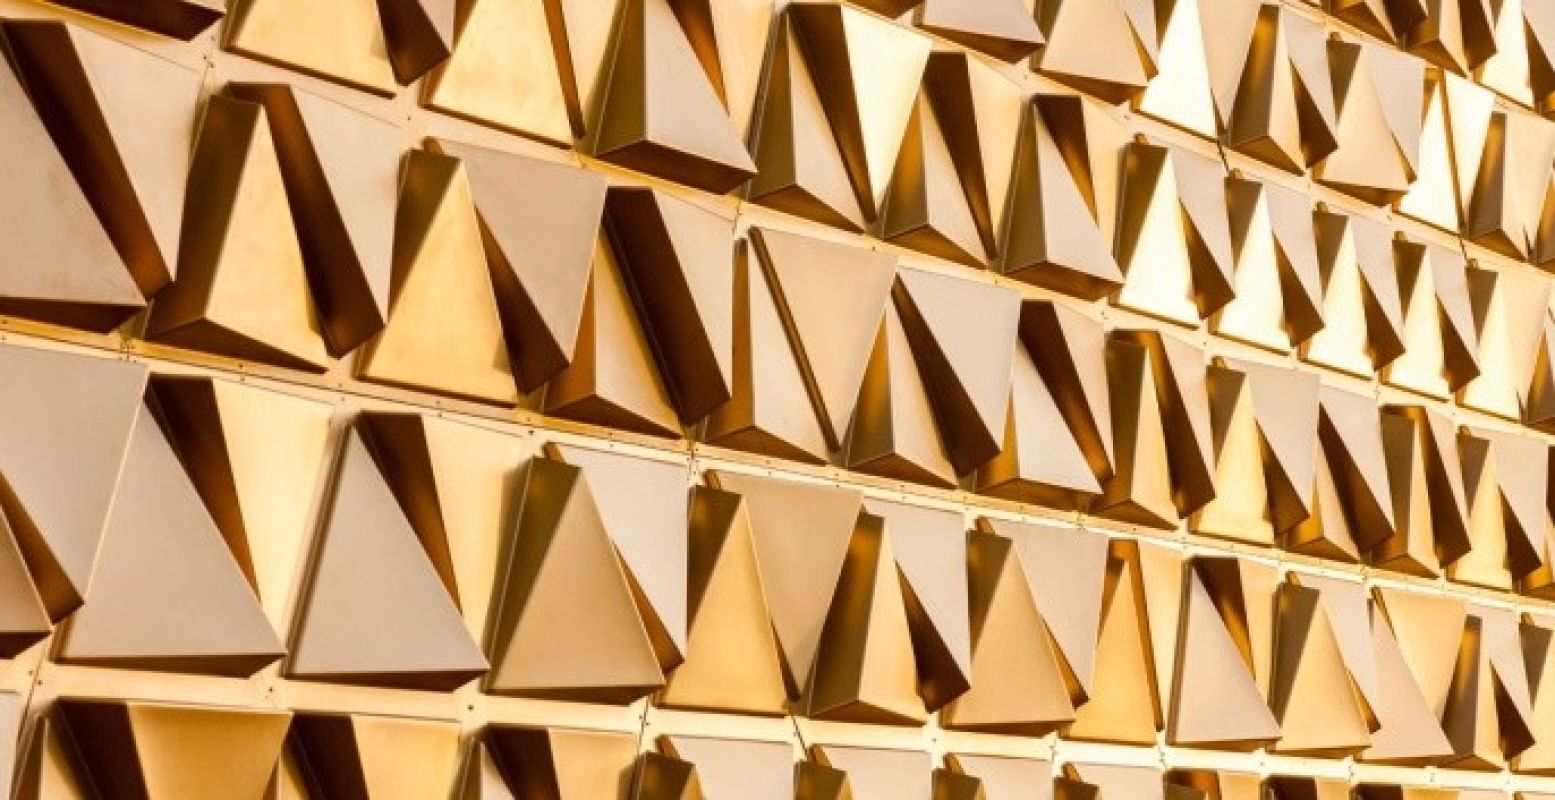 De gouden panelen die de gevel versieren.